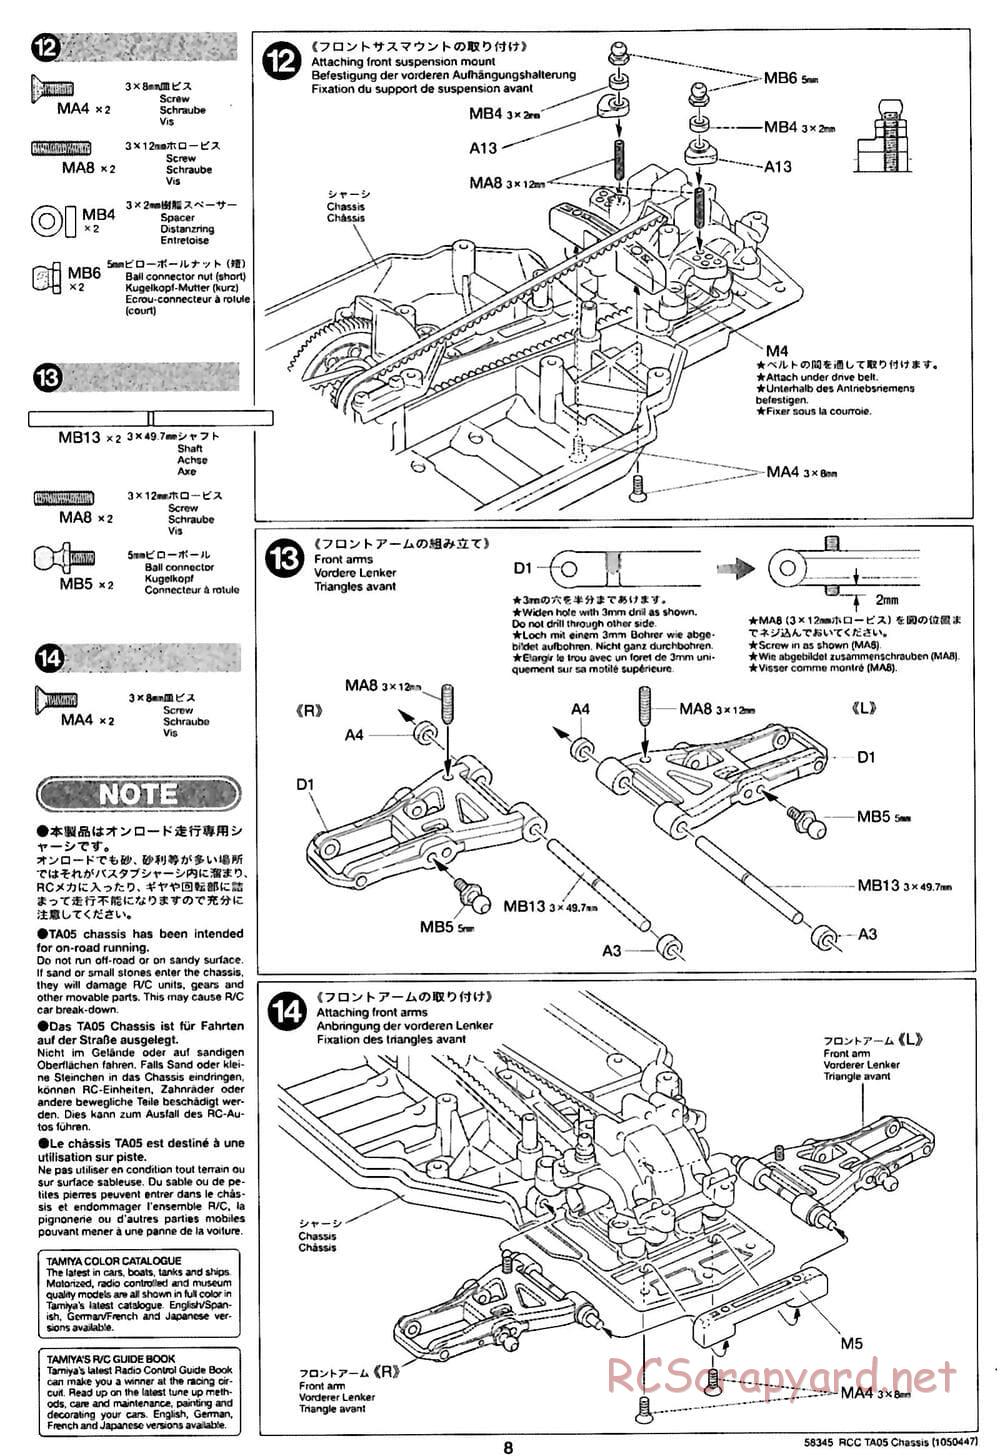 Tamiya - TA05 Chassis - Manual - Page 8